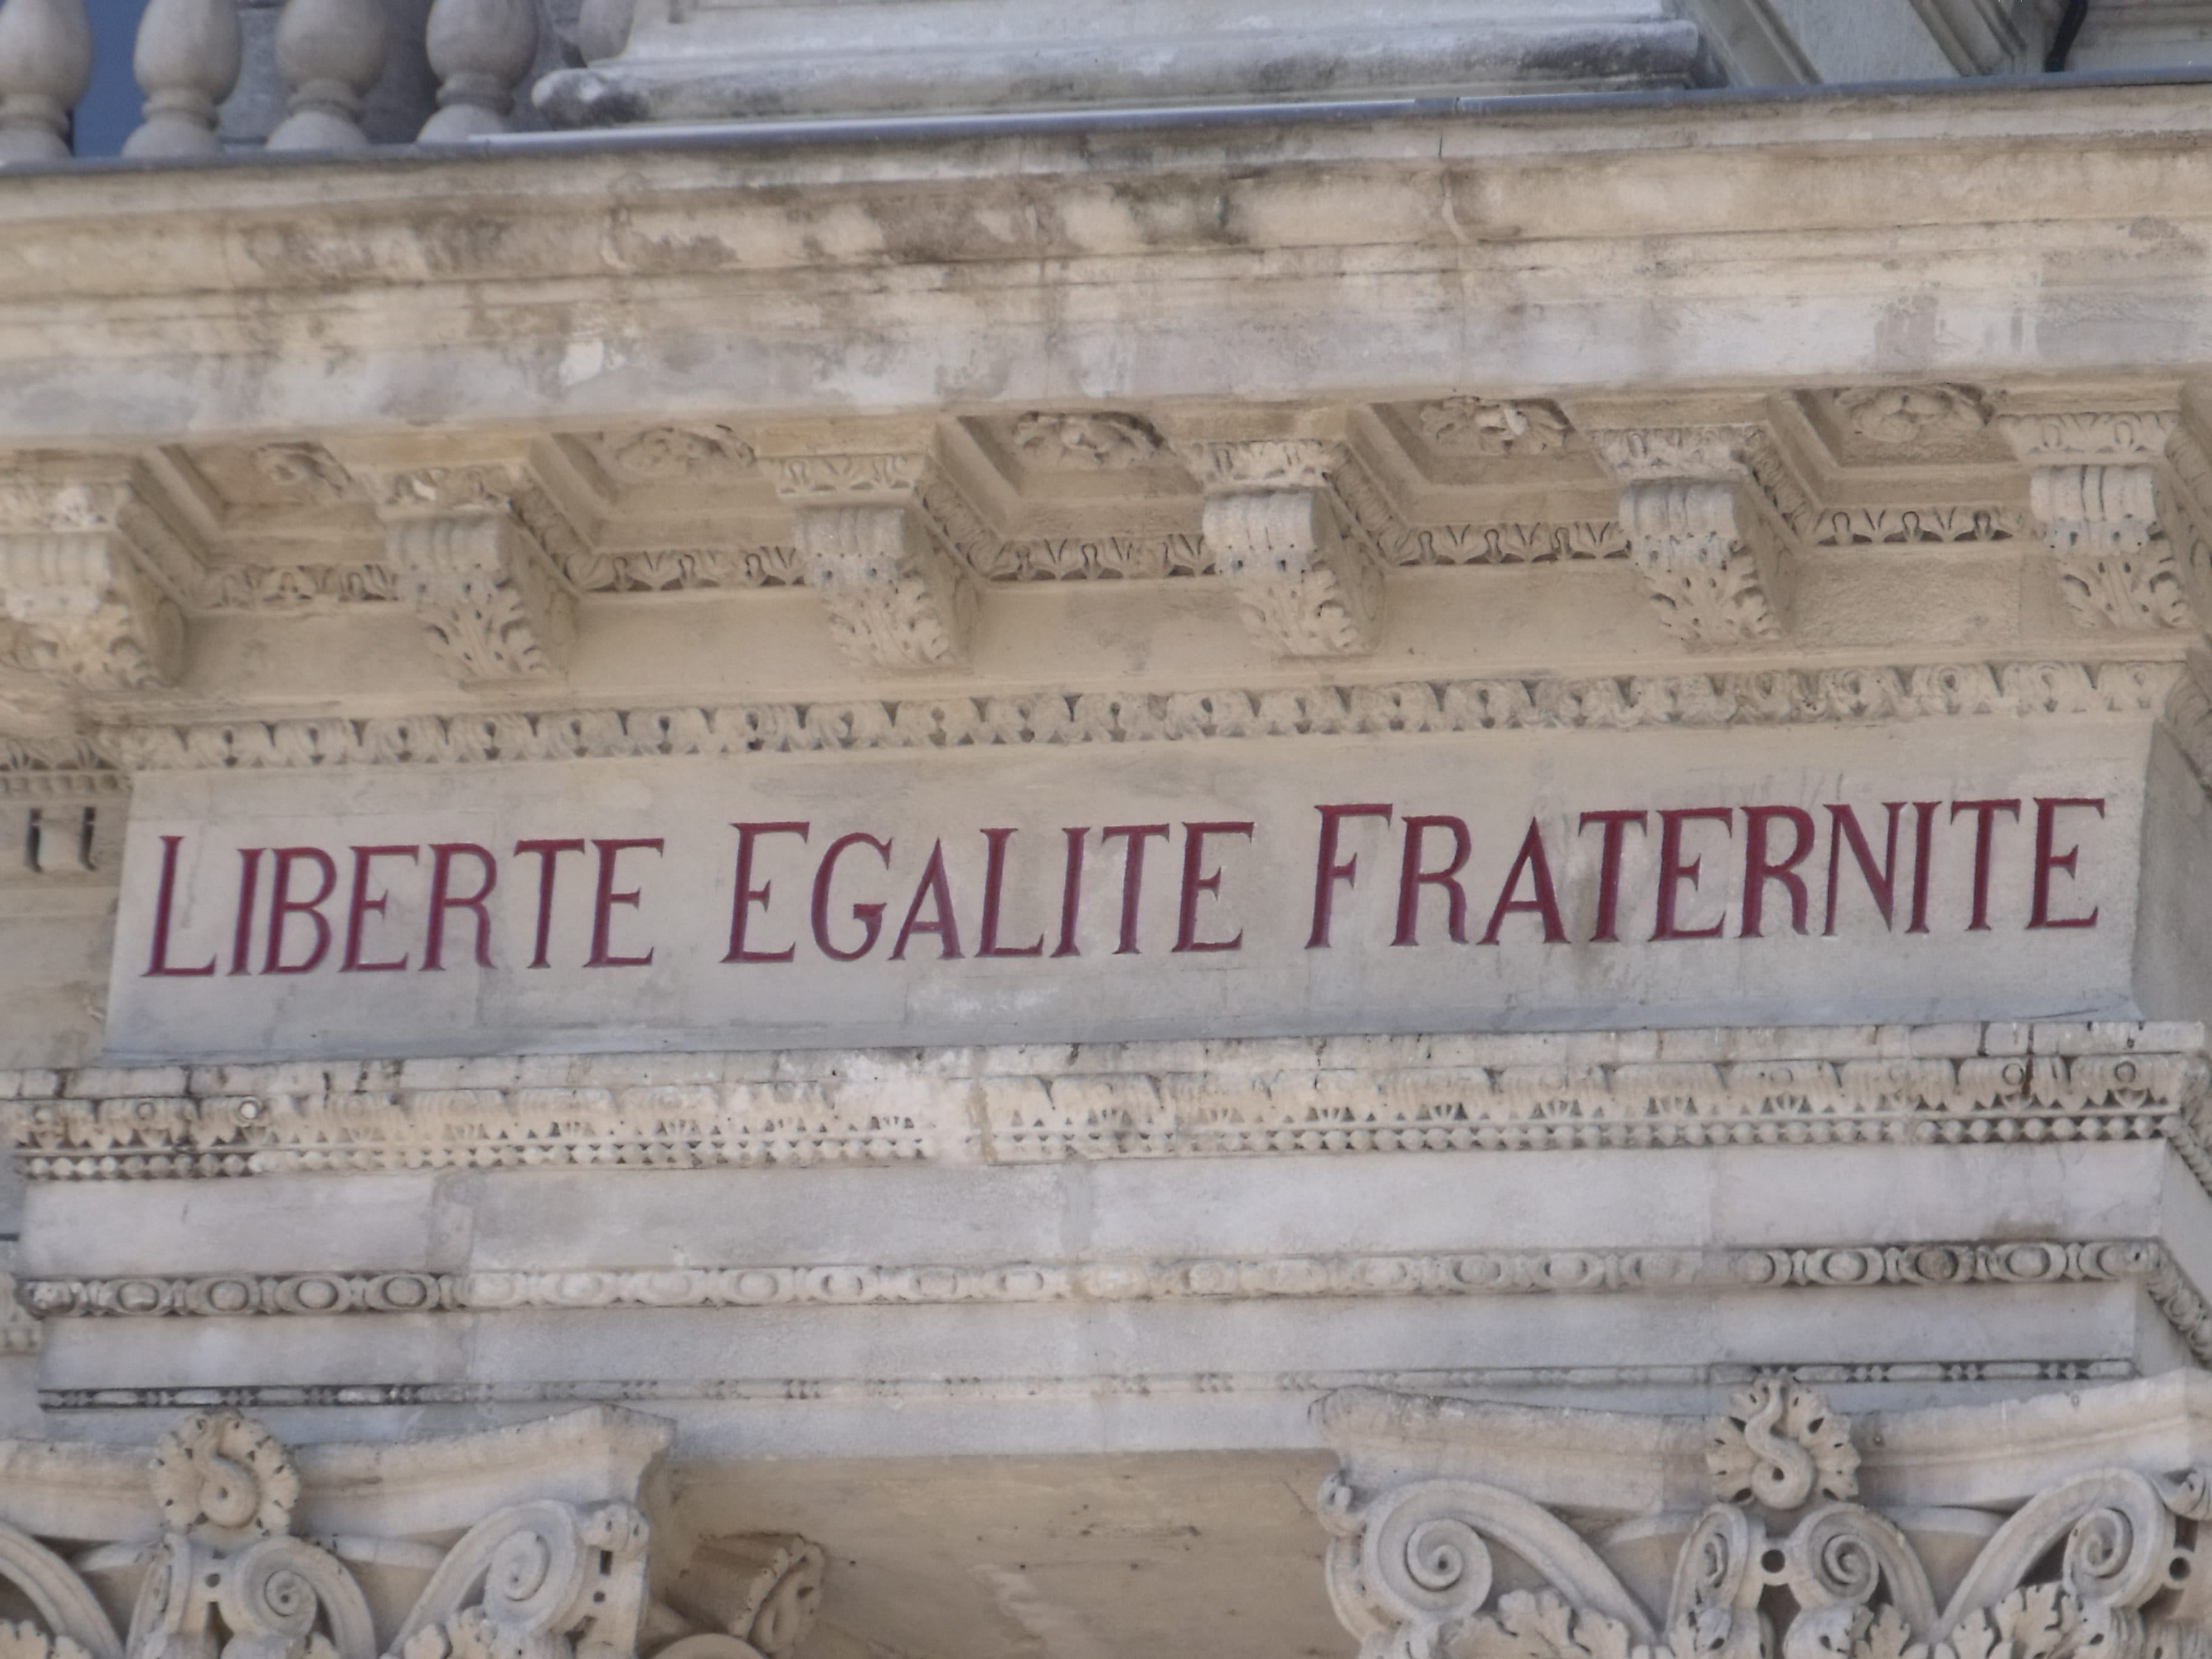 The words "liberte egalite fraternite" written above the entrance to the Hôtel de Ville in Avignon, France.